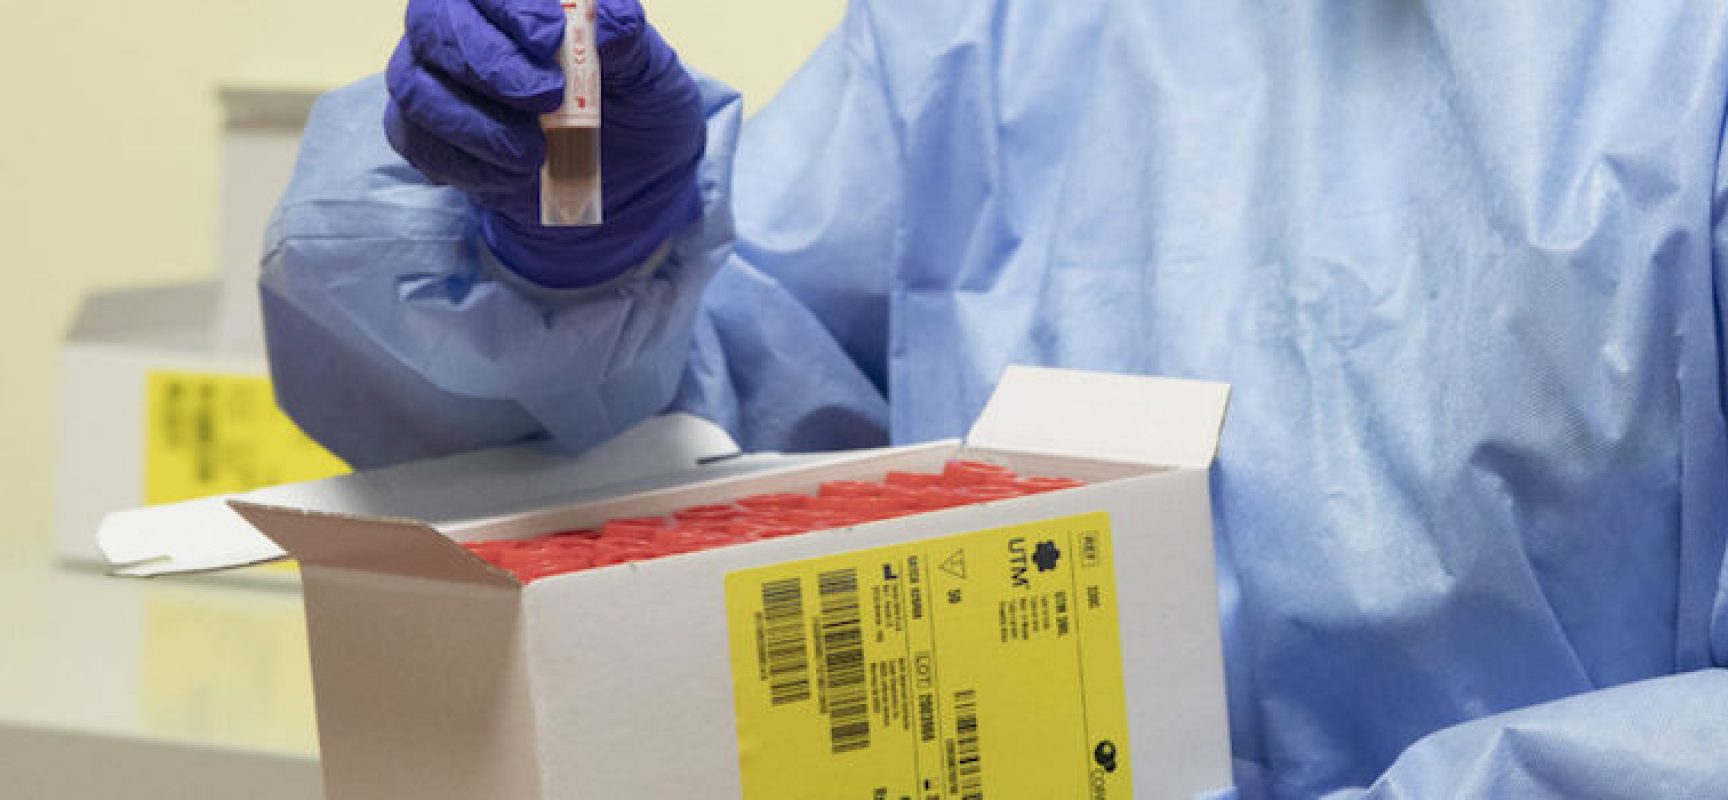 Aggiornamento Coronavirus: ancora nessun nuovo caso nella Bat, ma si registra un decesso